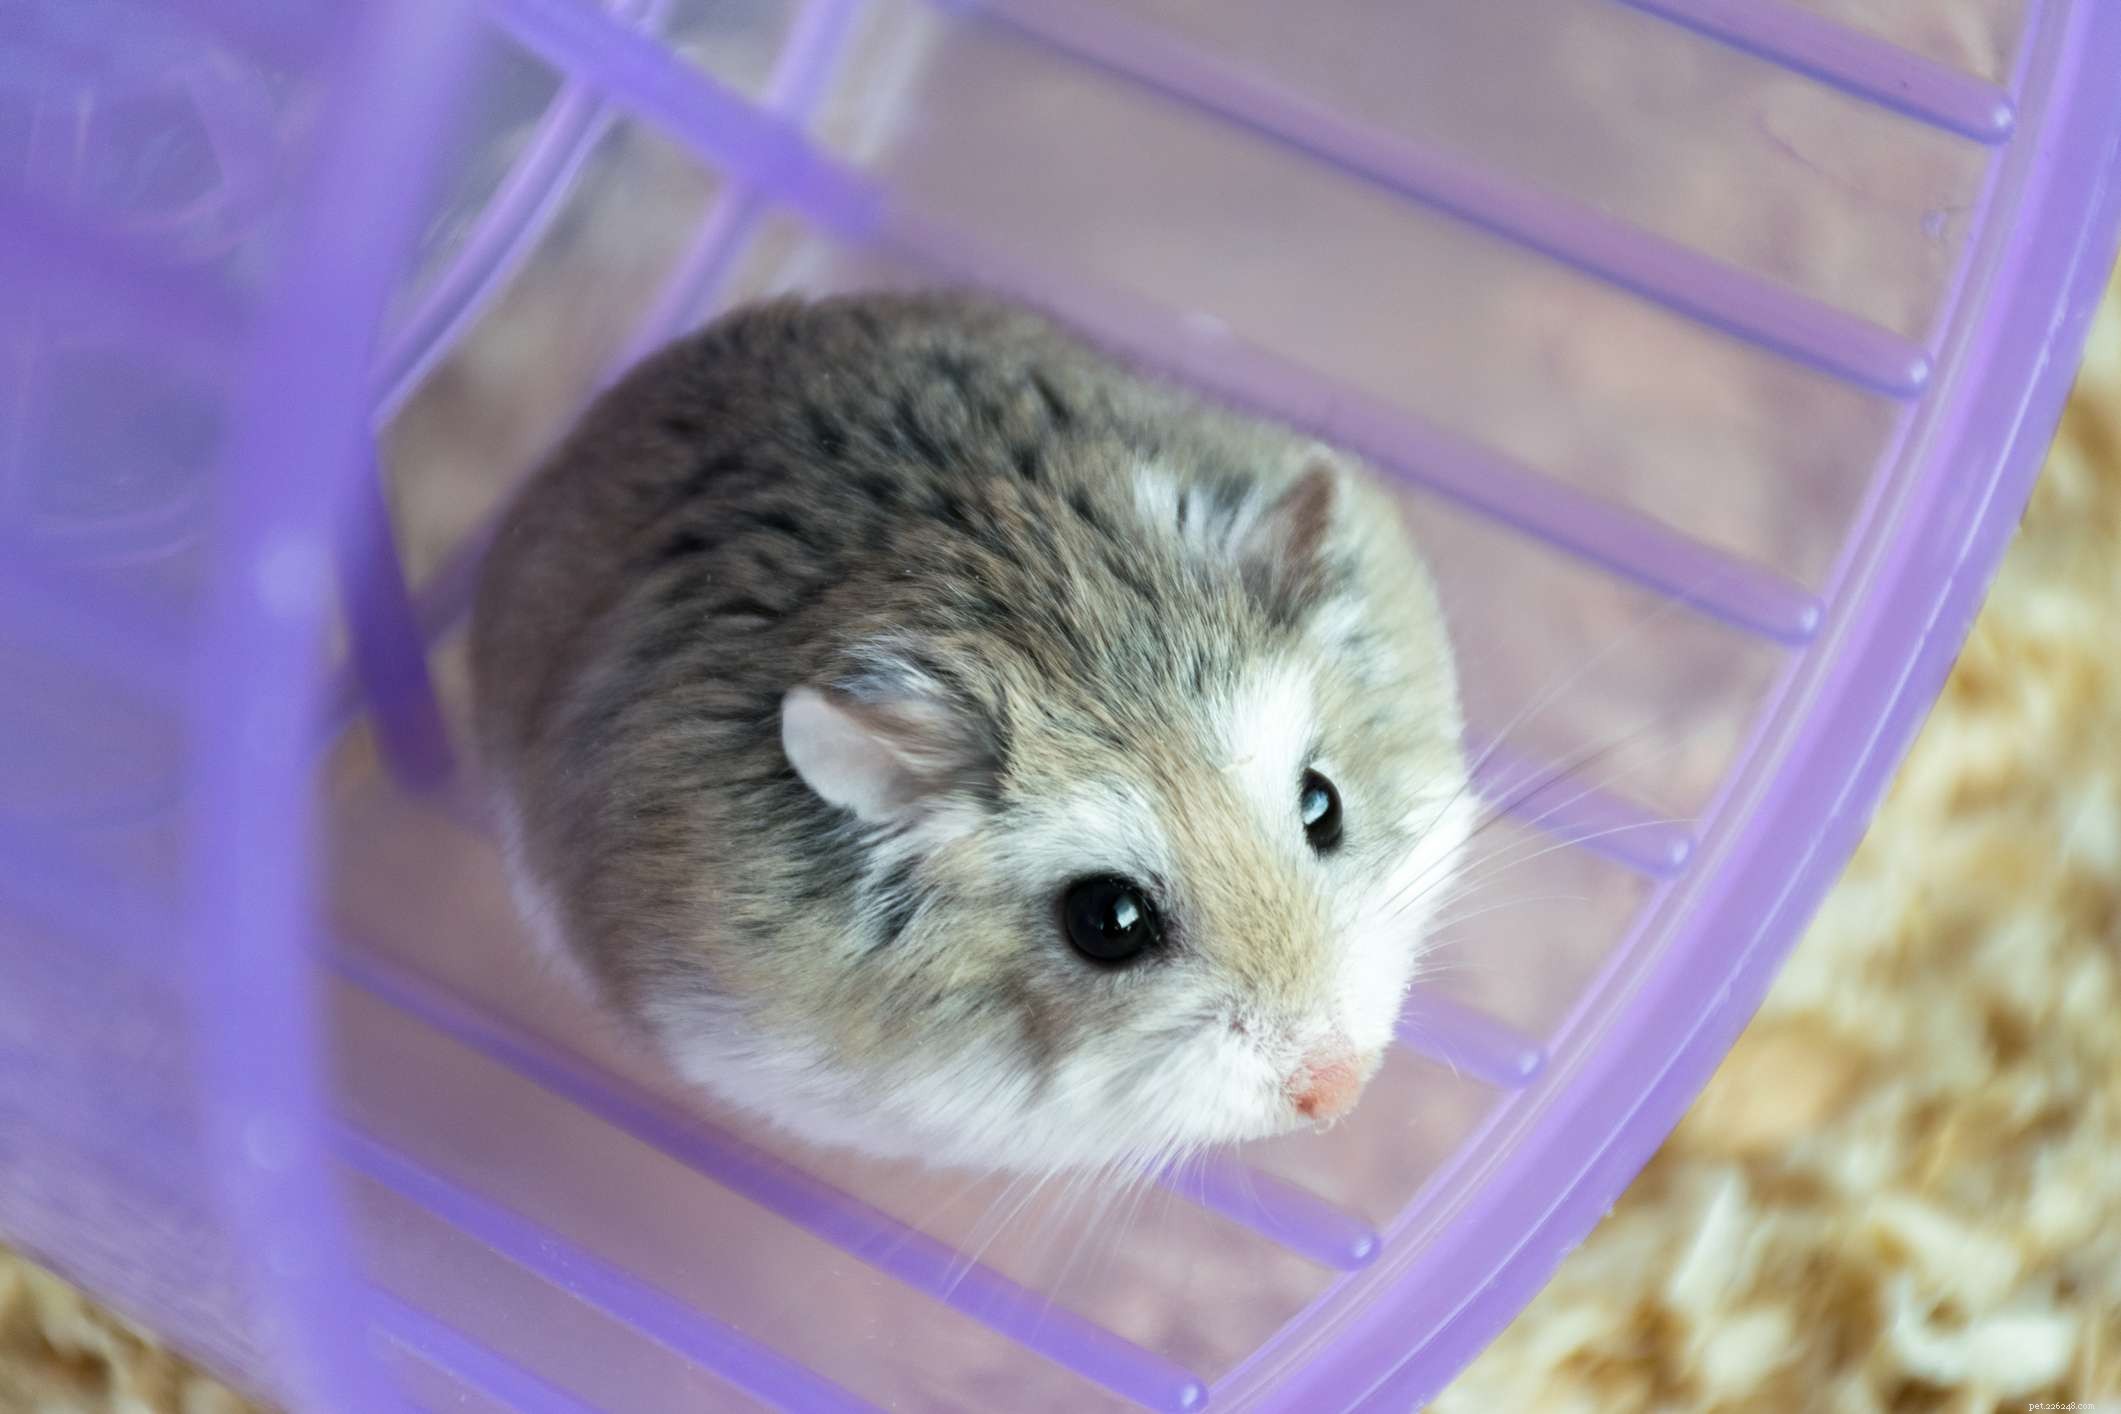 Les 5 espèces de hamster les plus populaires gardées comme animaux de compagnie